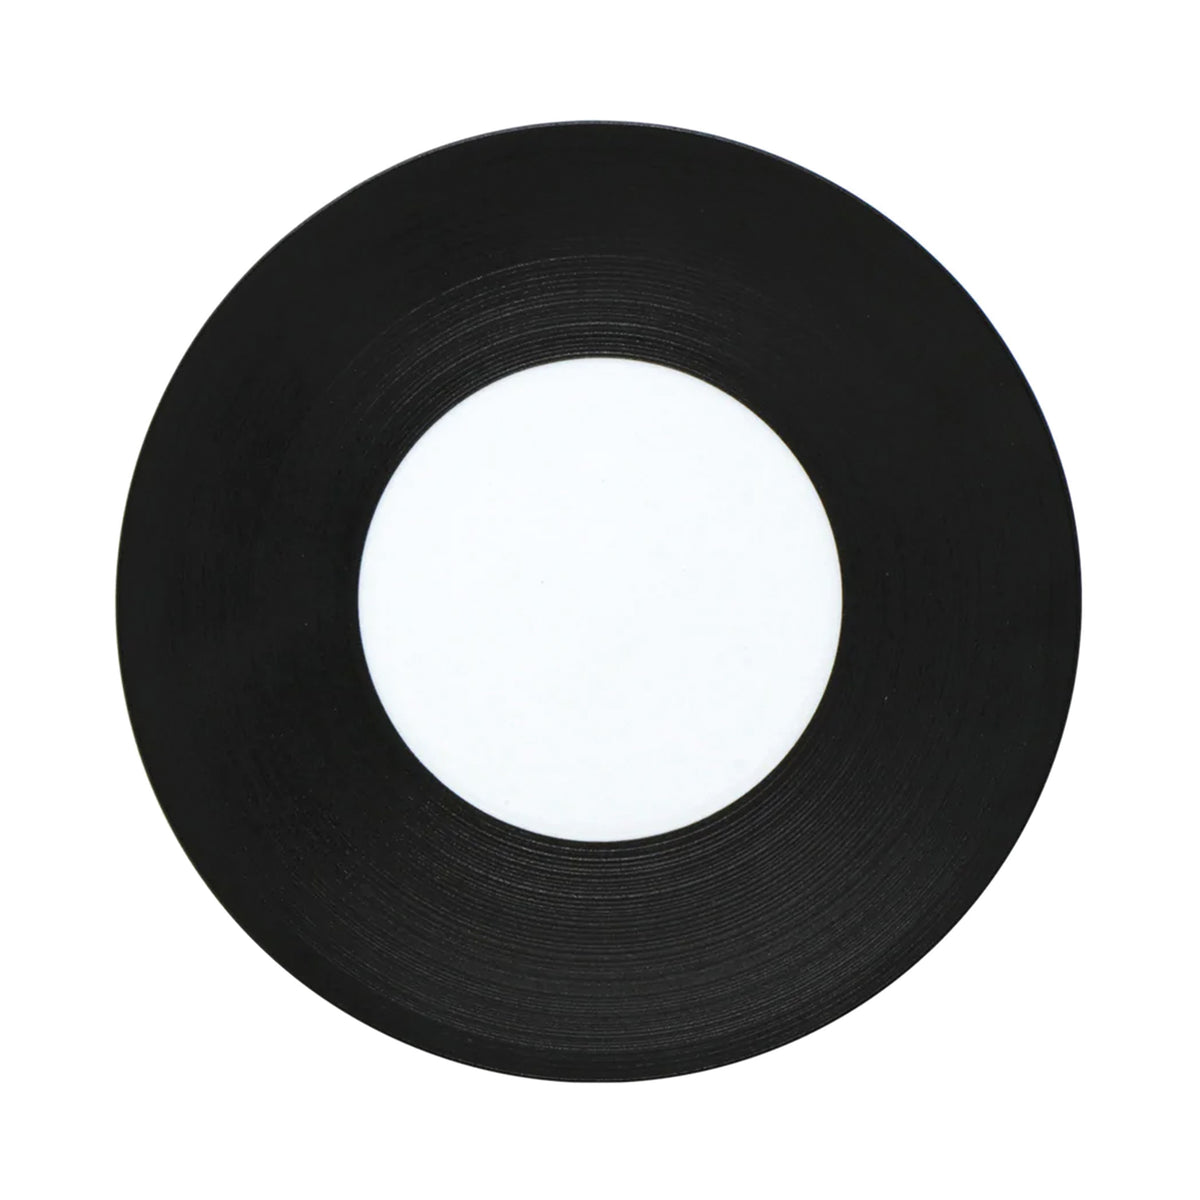 HEMISPHERE Bakelite Black - 29 cm plate